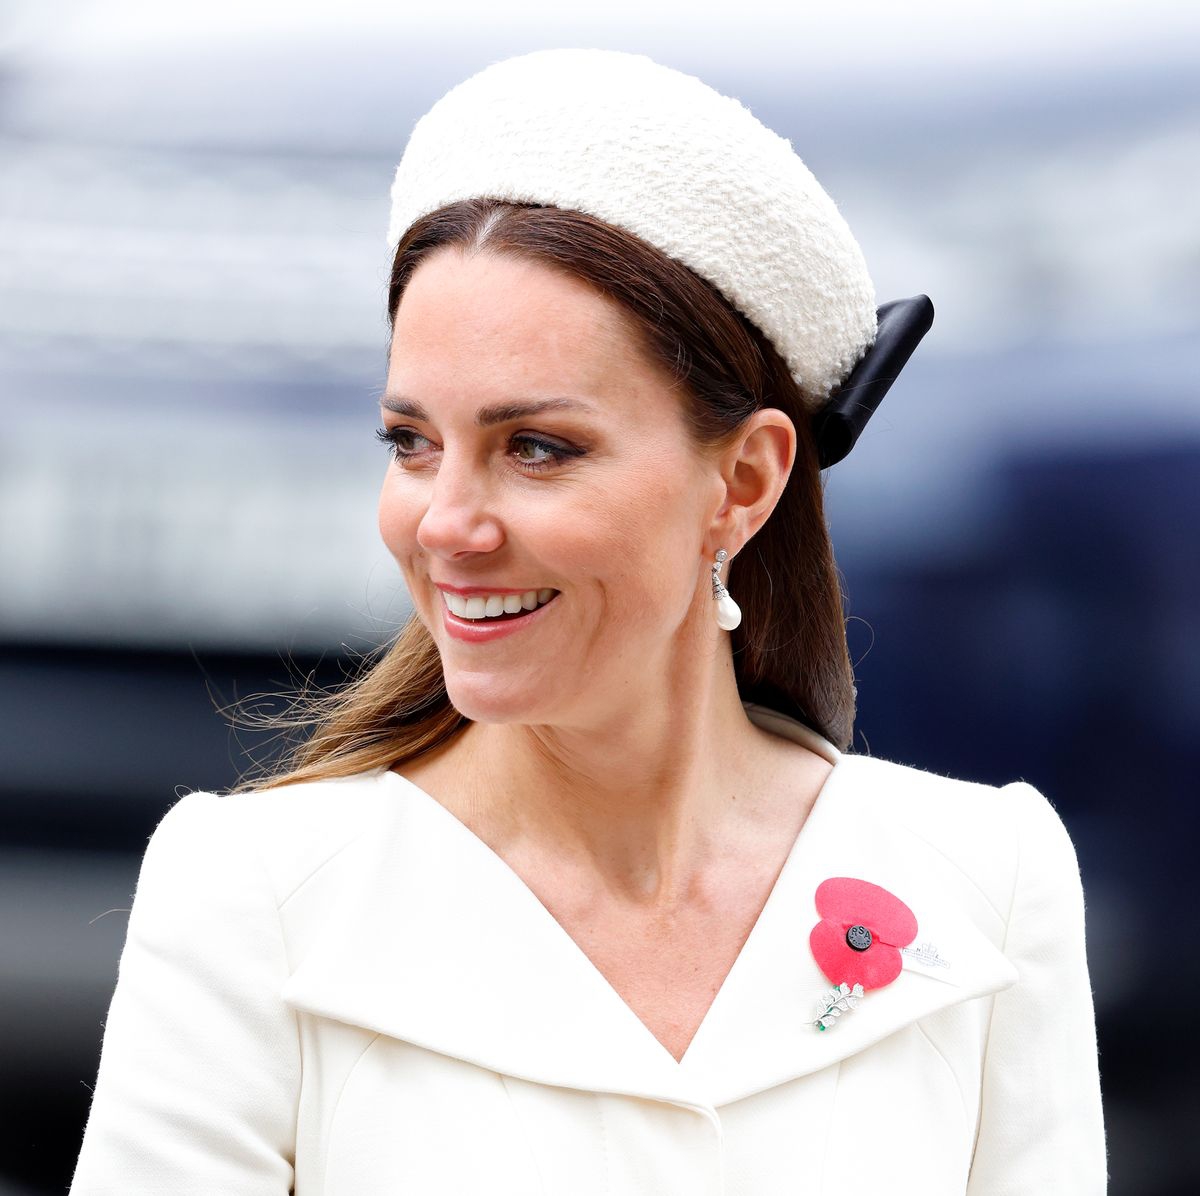 Gelar Bangsawan Kate Middleton dari Tahun ke Tahun